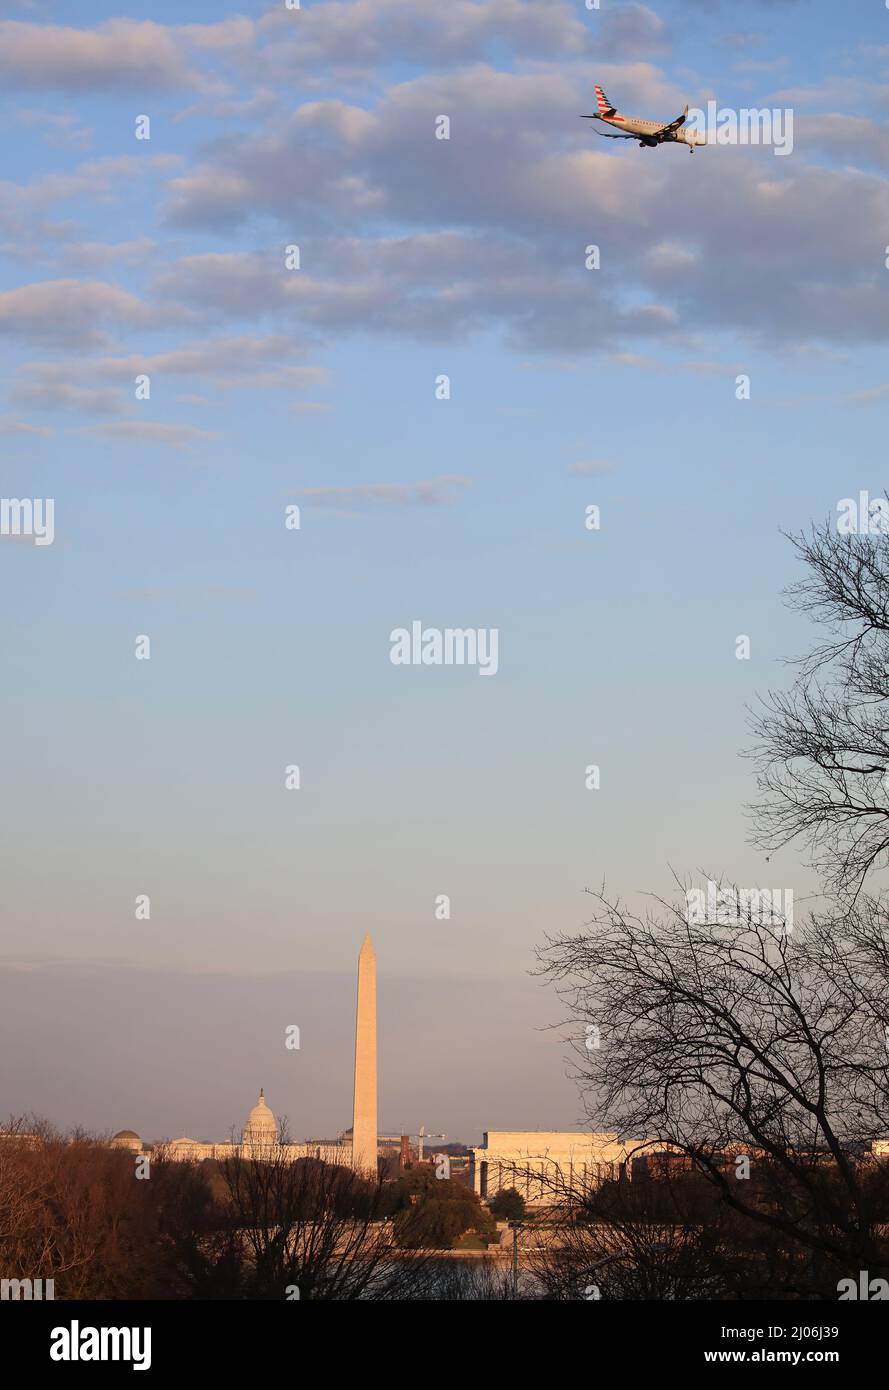 Horizon de Washington DC au coucher du soleil, avec le bâtiment du Capitole des États-Unis, le Lincoln Memorial, le Washington Monument - Washington DC, États-Unis. Banque D'Images